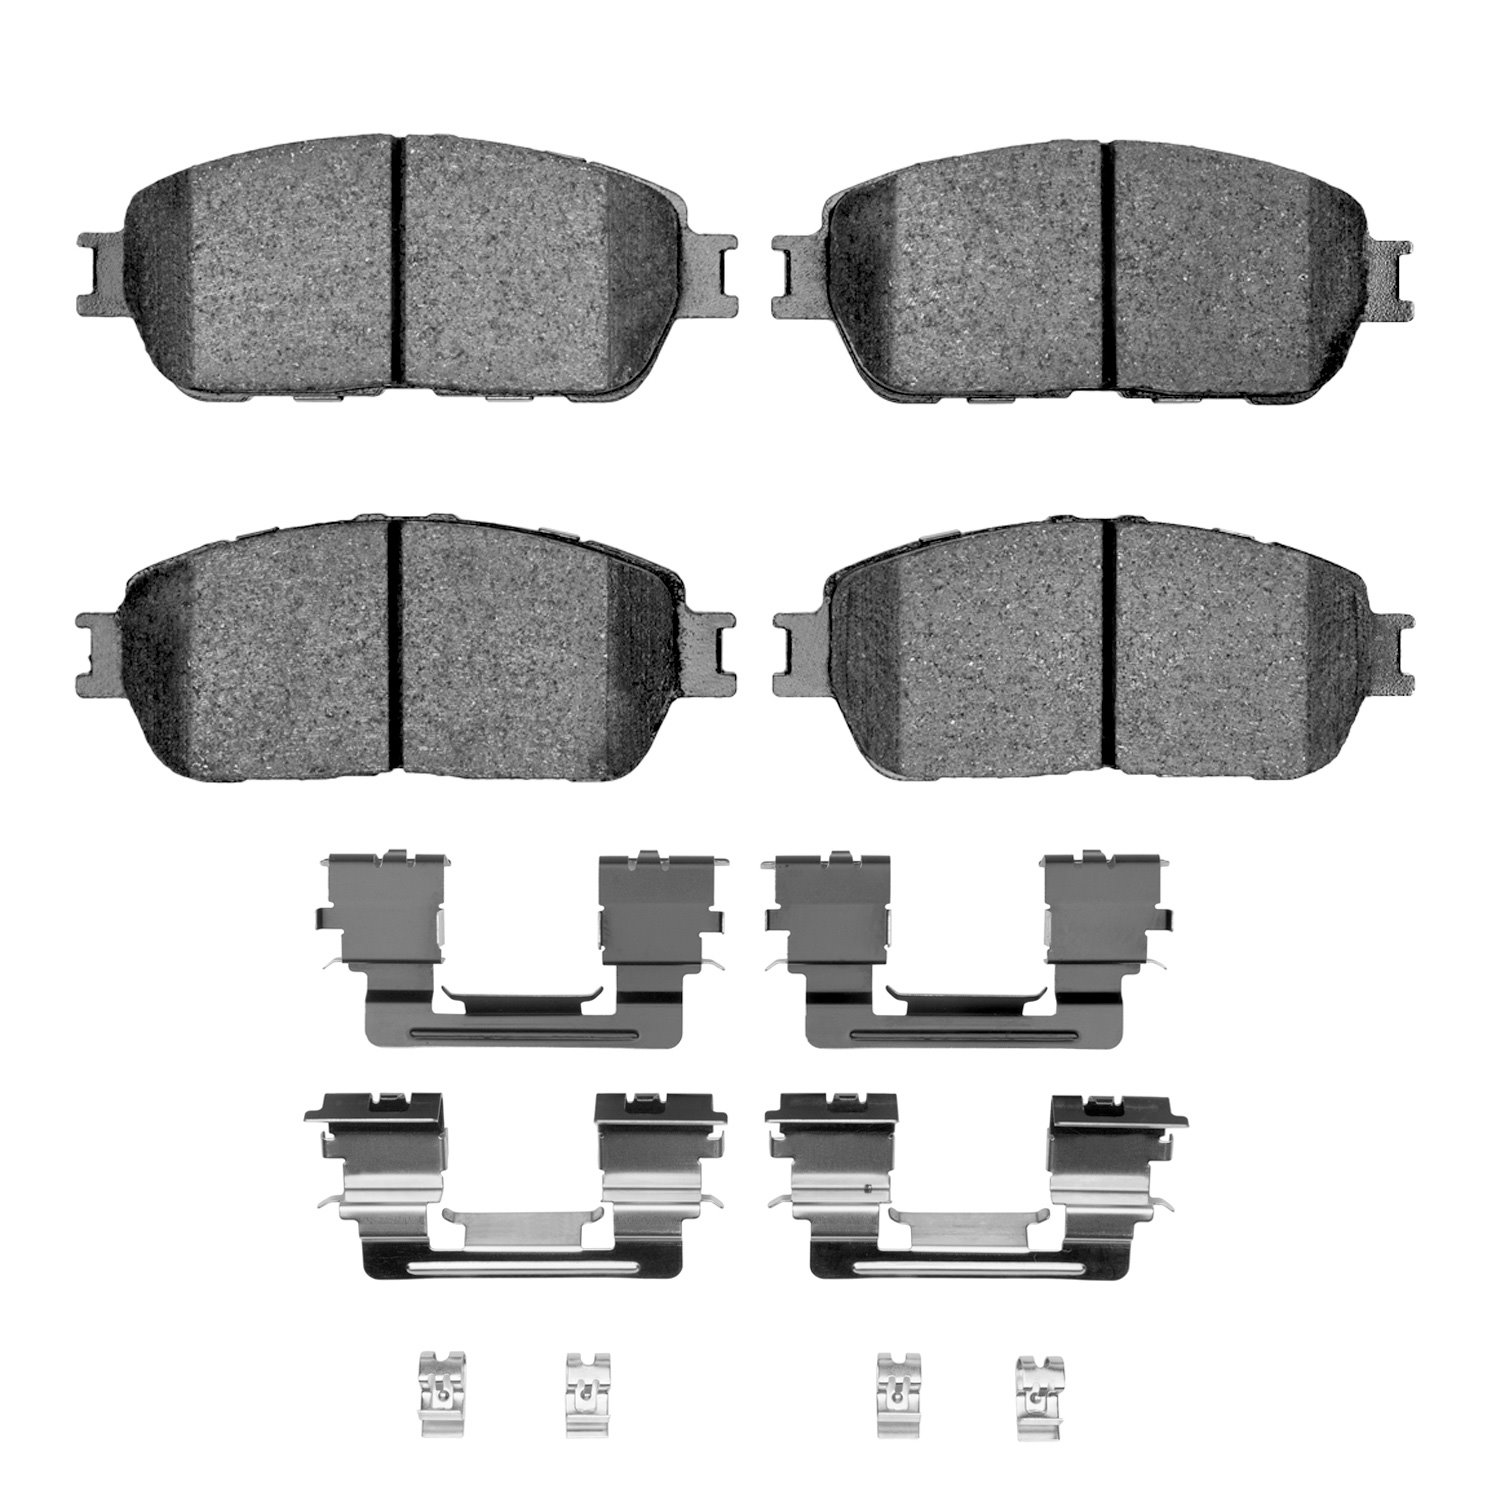 1310-0906-12 3000-Series Ceramic Brake Pads & Hardware Kit, 2005-2015 Lexus/Toyota/Scion, Position: Front